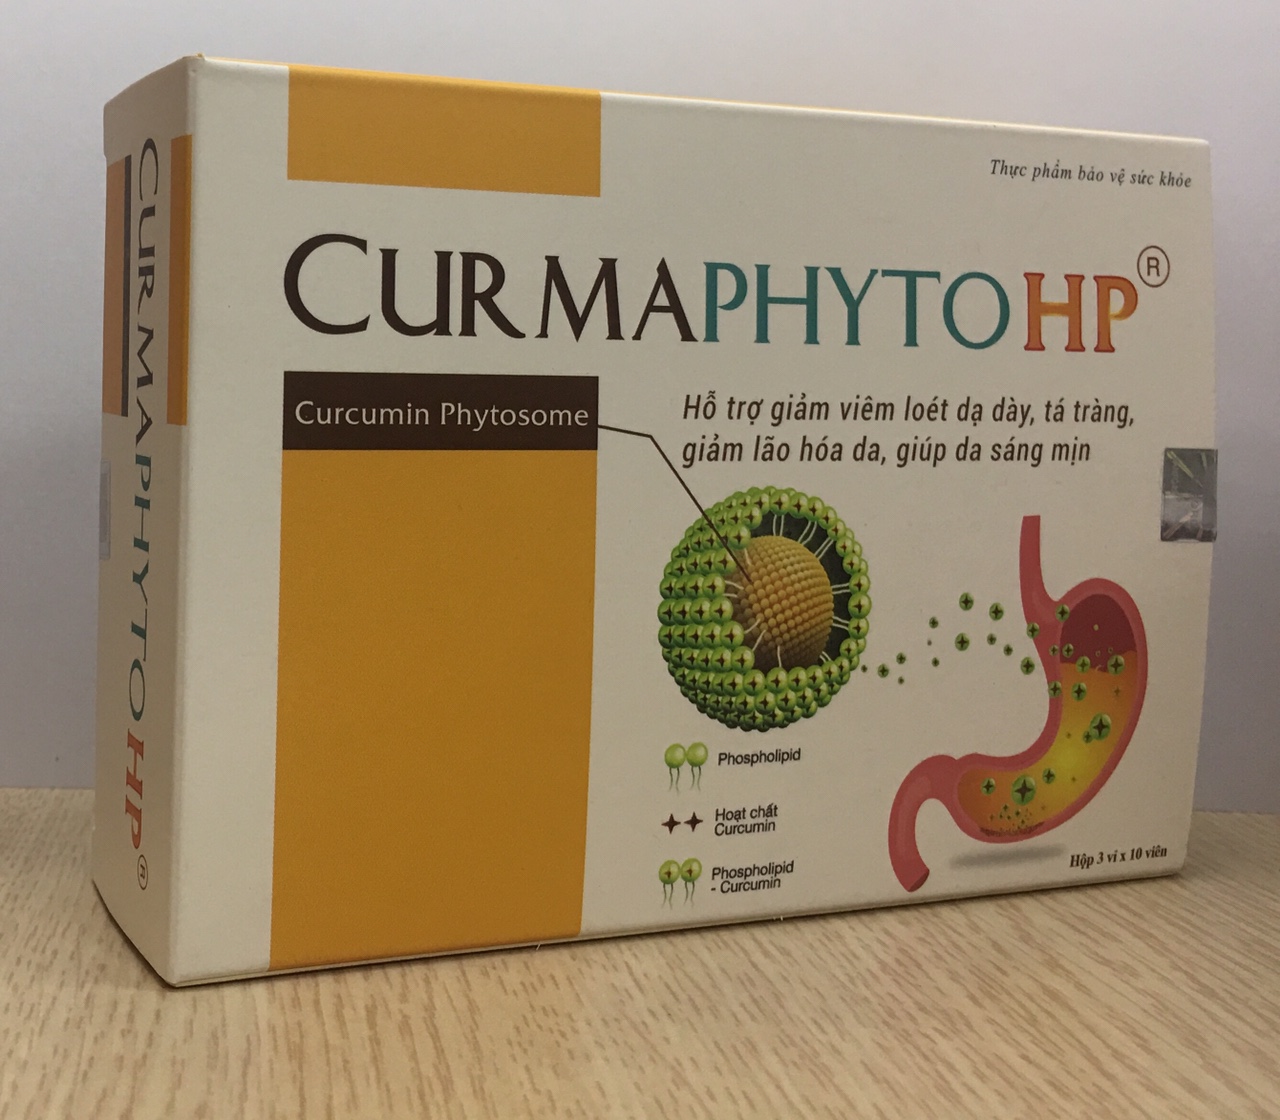 CurmaphytoHP- Giải pháp mới cho người đau dạ dày